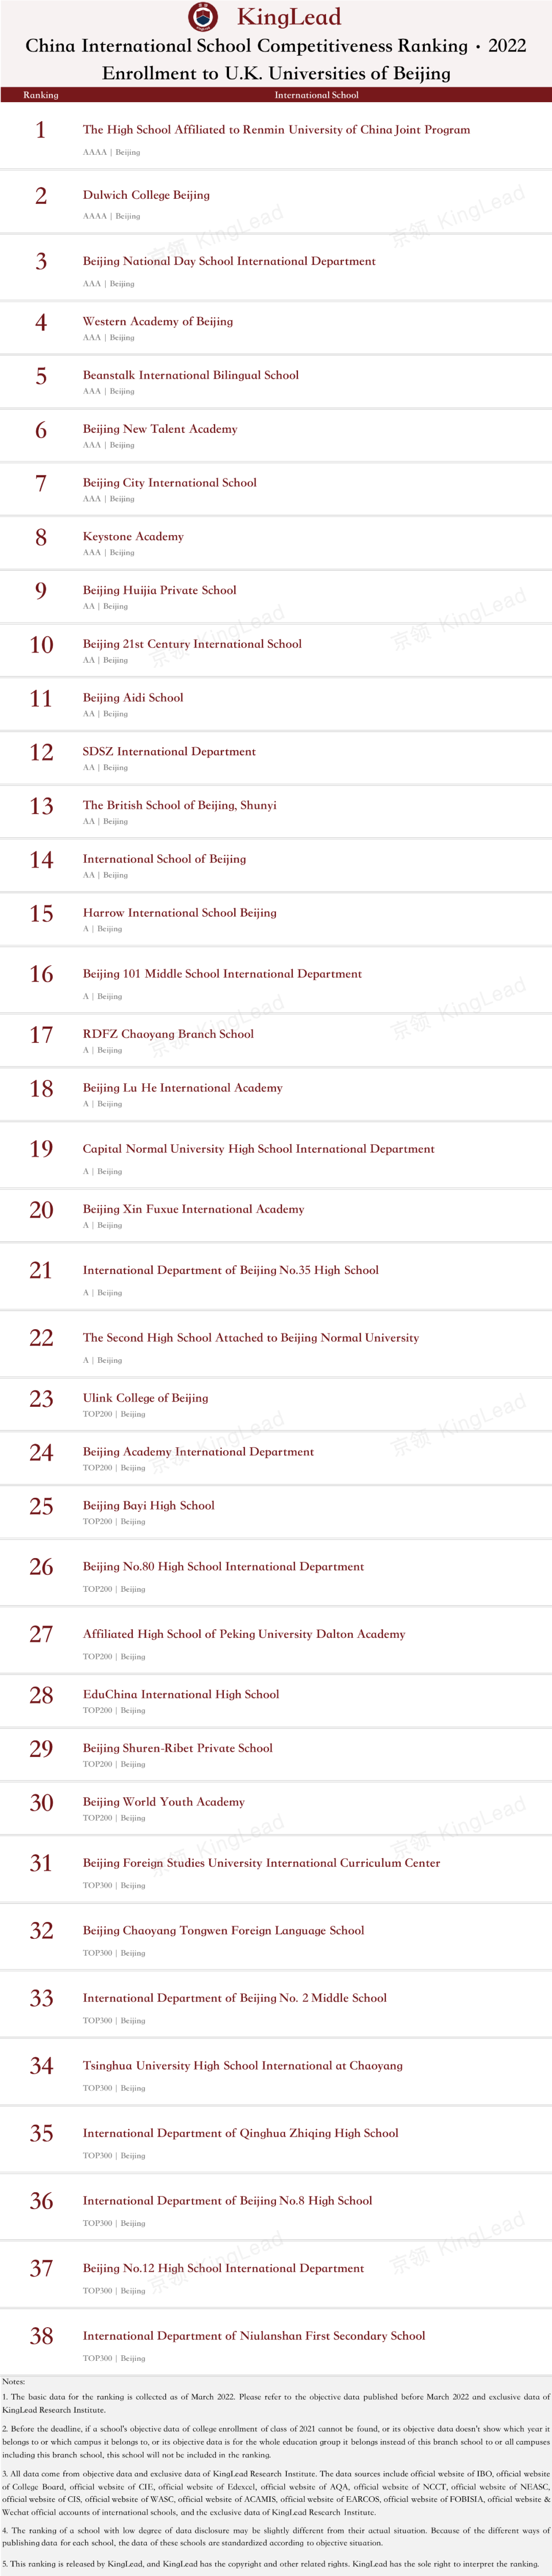 2022中国国际学校竞争力排行榜(京领出品) --国际学校榜单【北京】  数据 国际学校 第15张